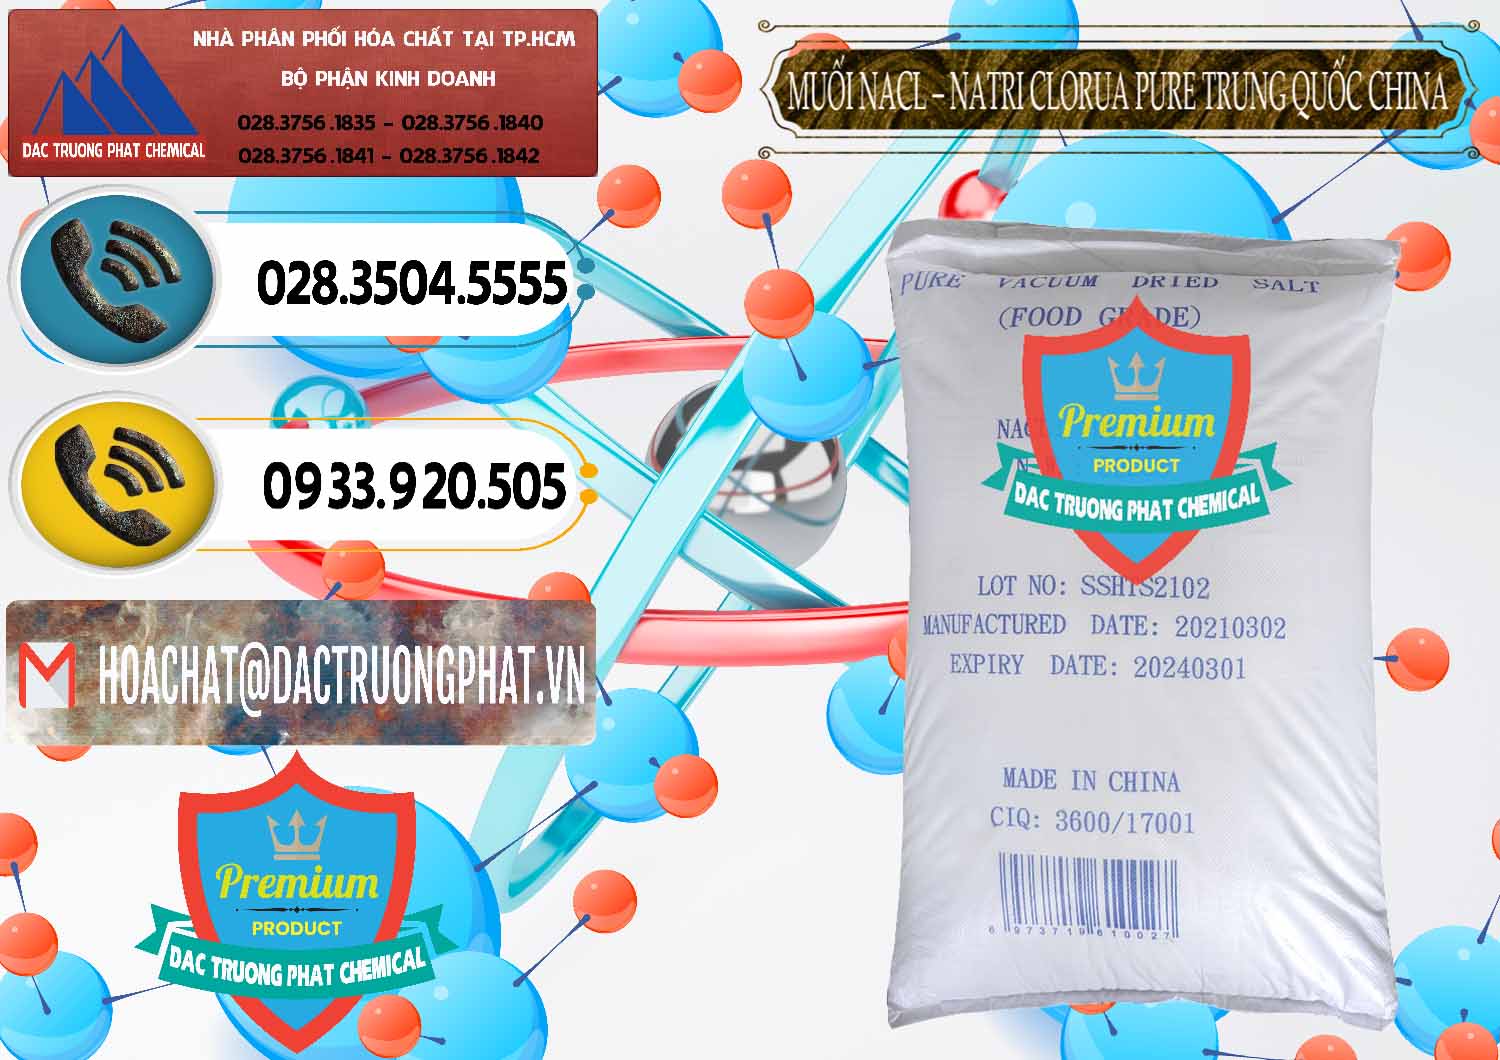 Cty bán & cung cấp Muối NaCL – Sodium Chloride Pure Trung Quốc China - 0230 - Đơn vị kinh doanh _ cung cấp hóa chất tại TP.HCM - hoachatdetnhuom.vn